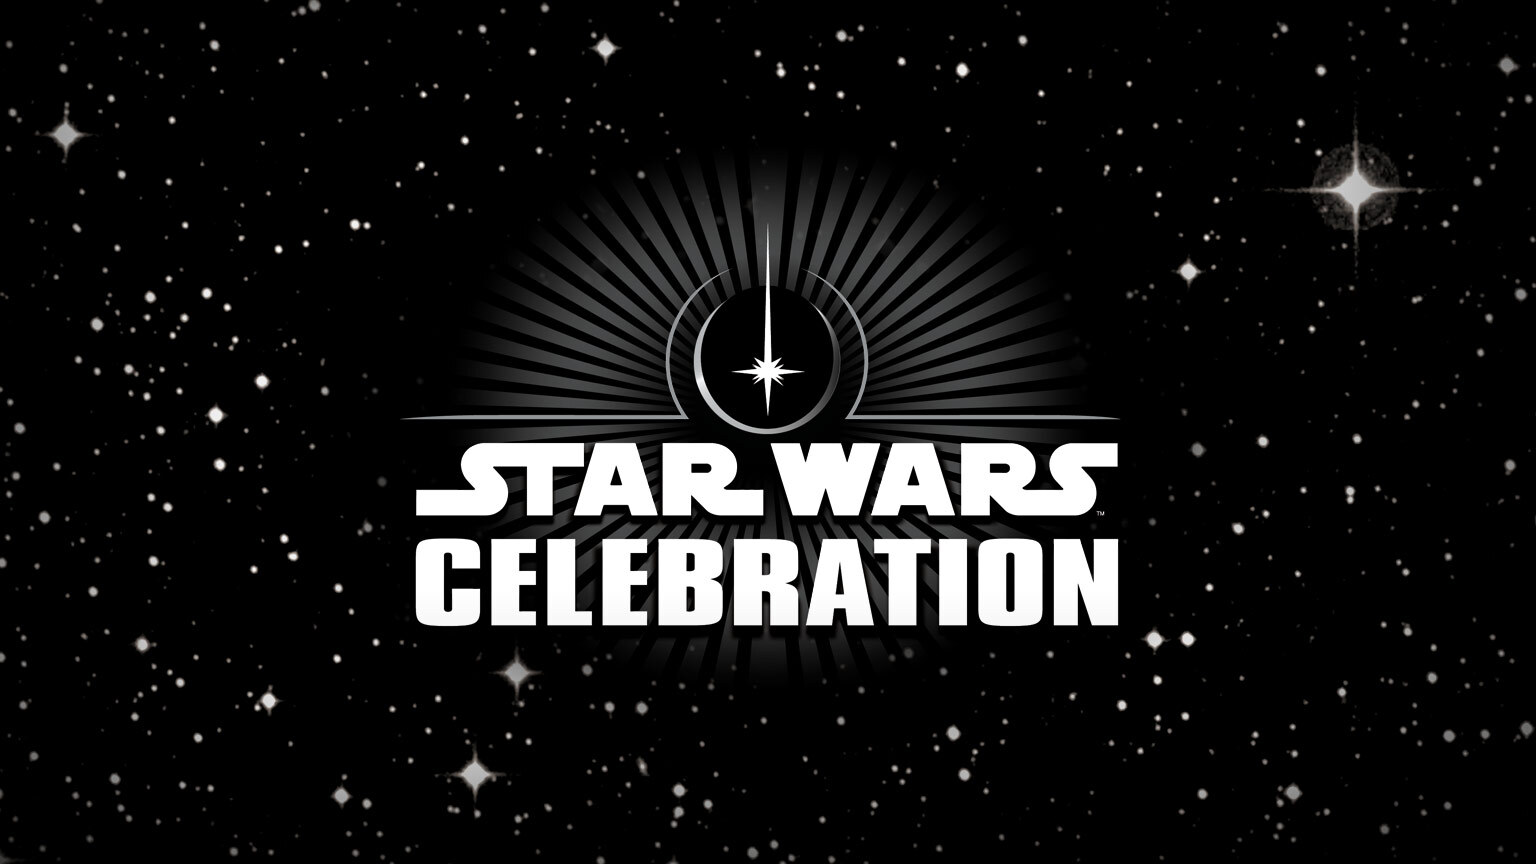 Disney Shares Update on 2020 Star Wars Celebration